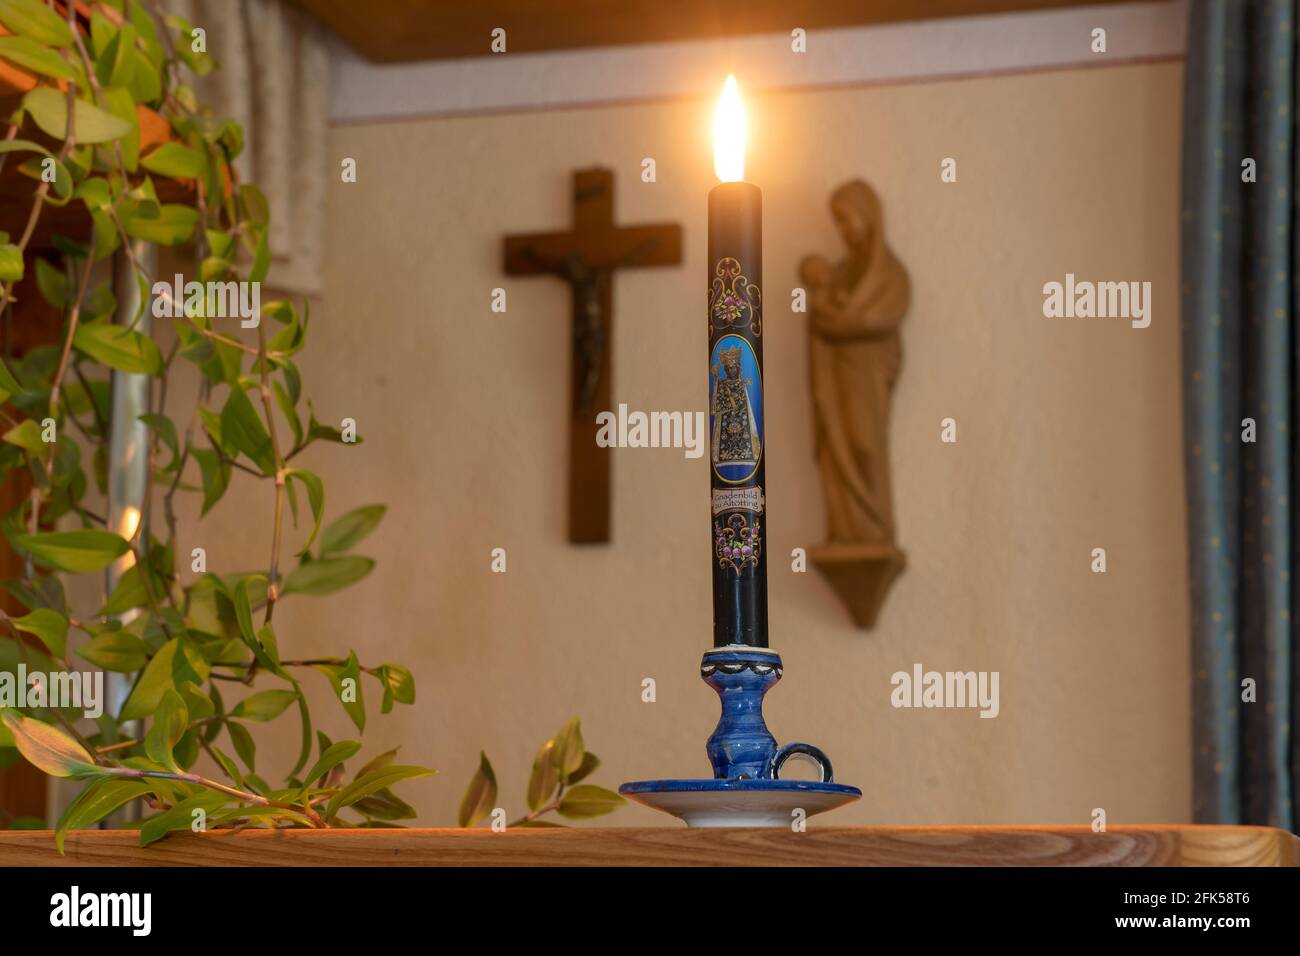 Wetterkerze vor dem Herrgottswinkel- christlicher Glaube die brennende Kerze soll Unheil bei einem Gewitter abwehren Foto de stock